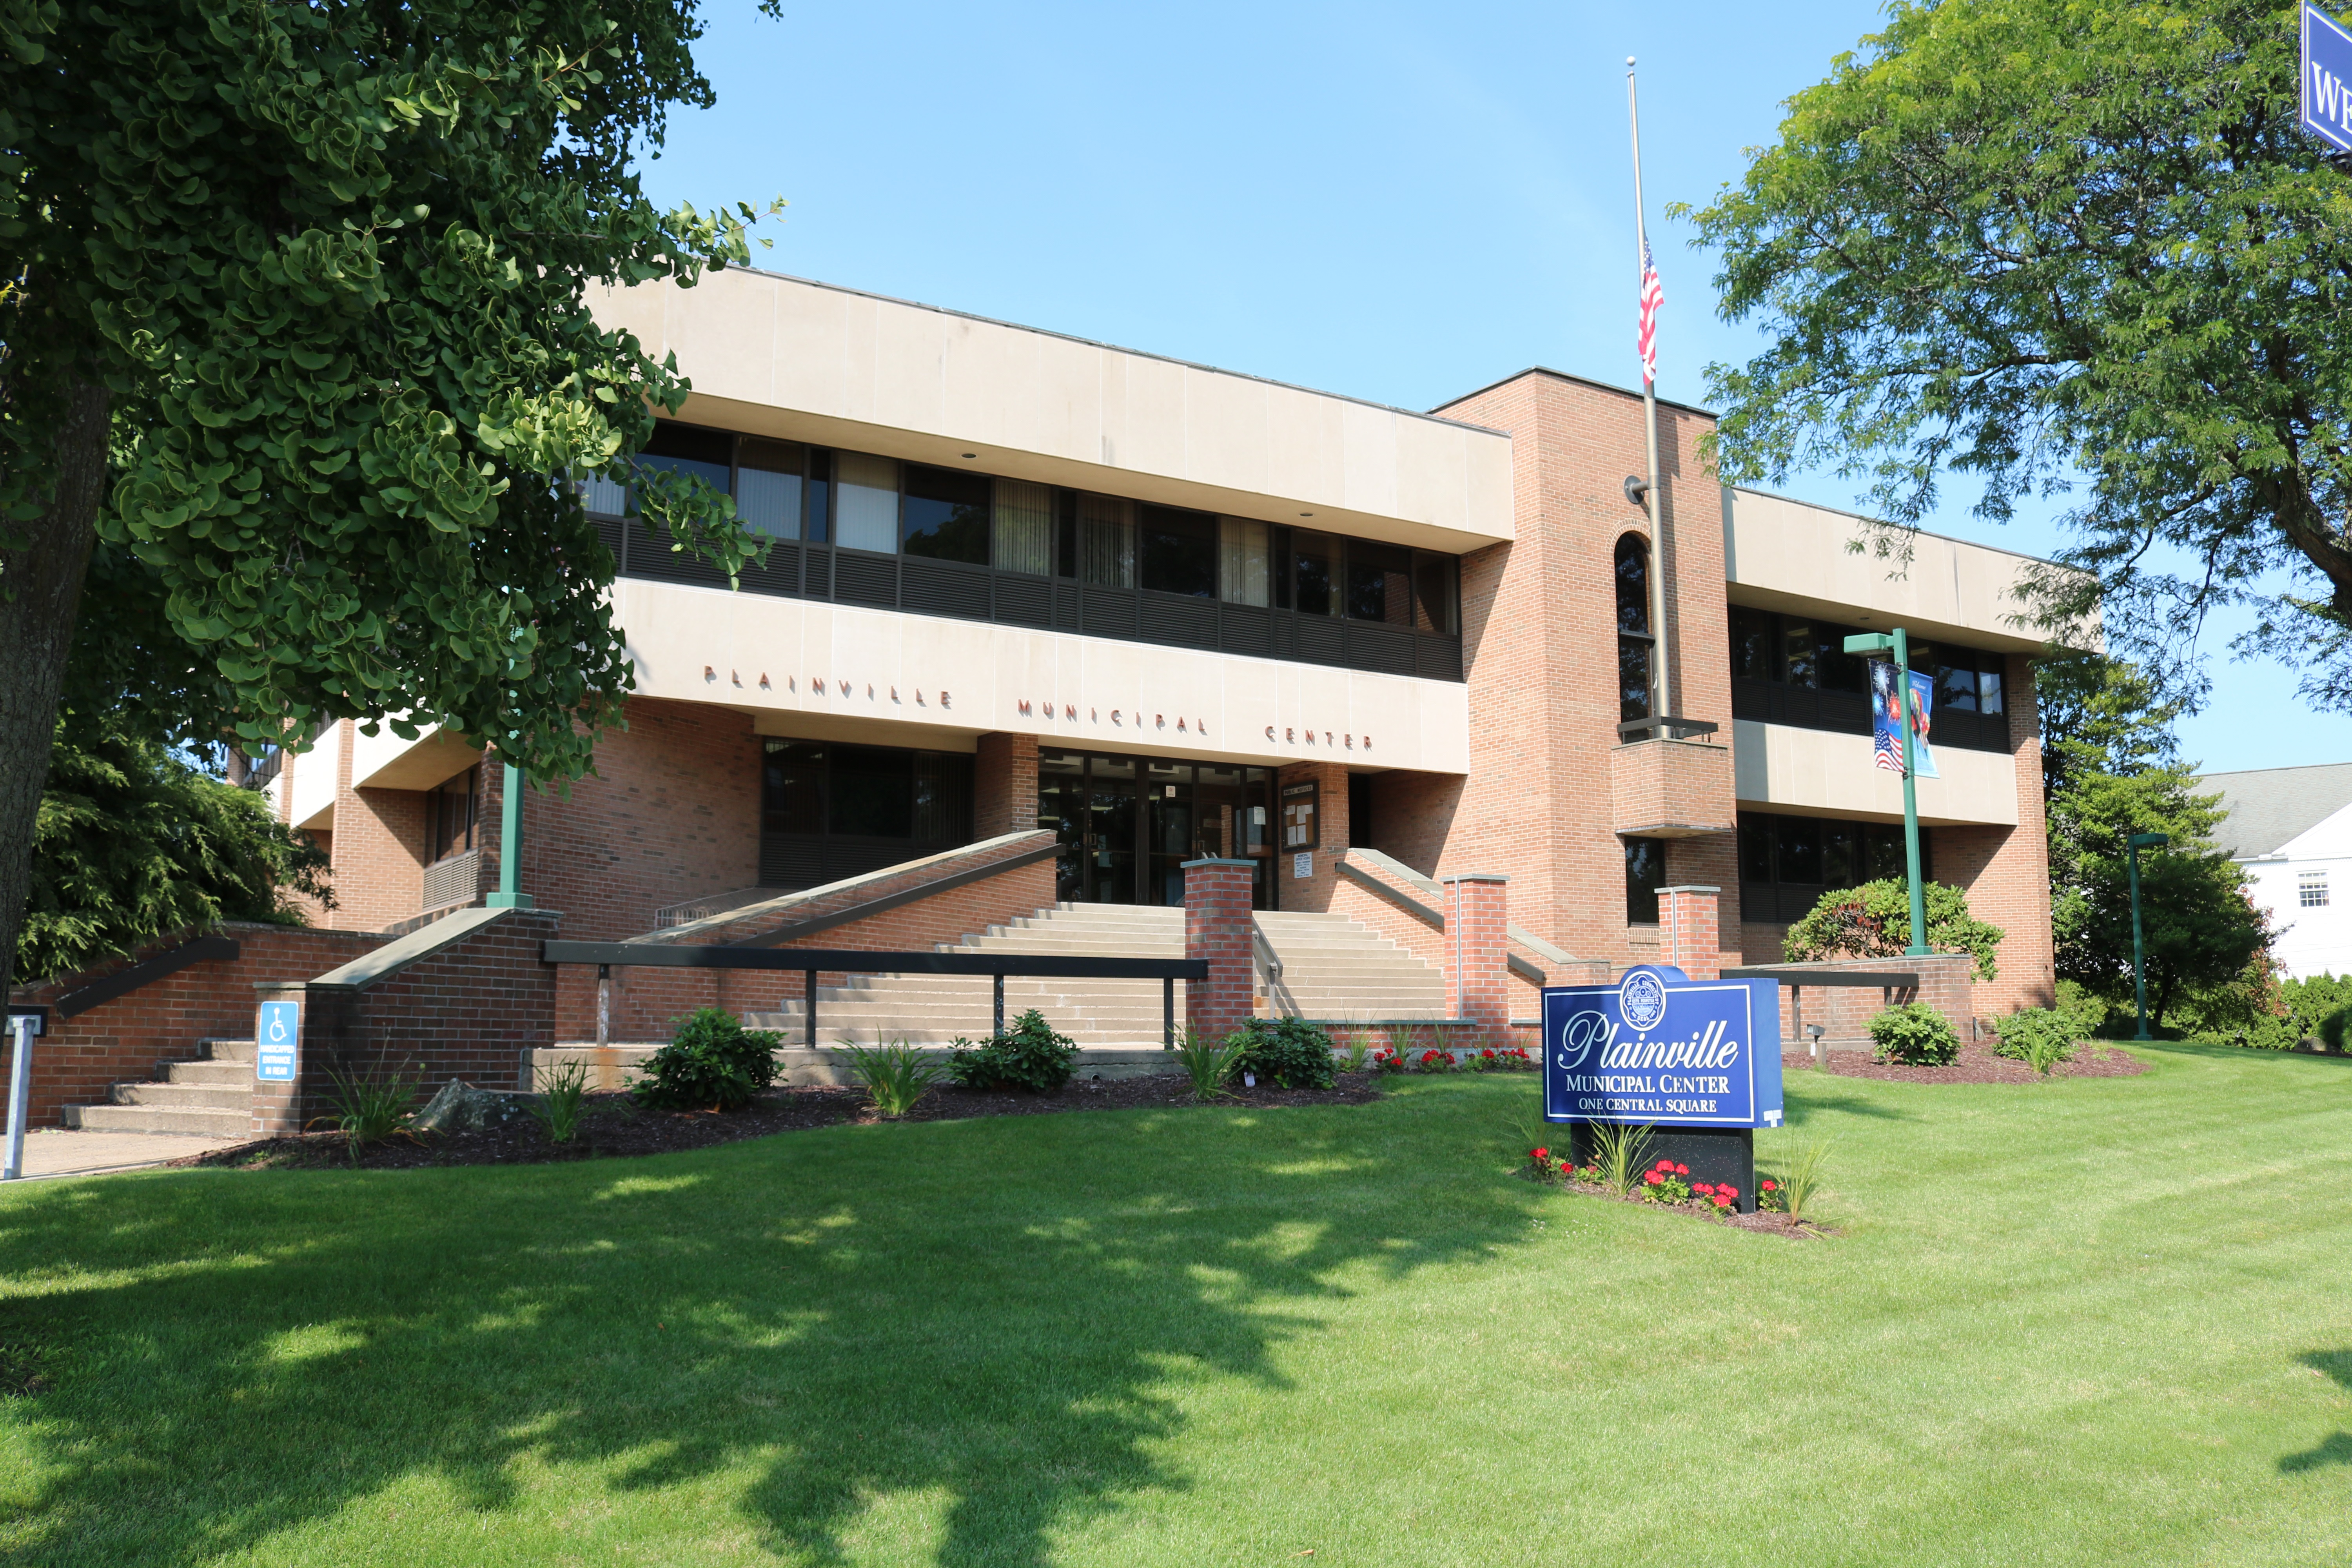 Plainville Municipal Center